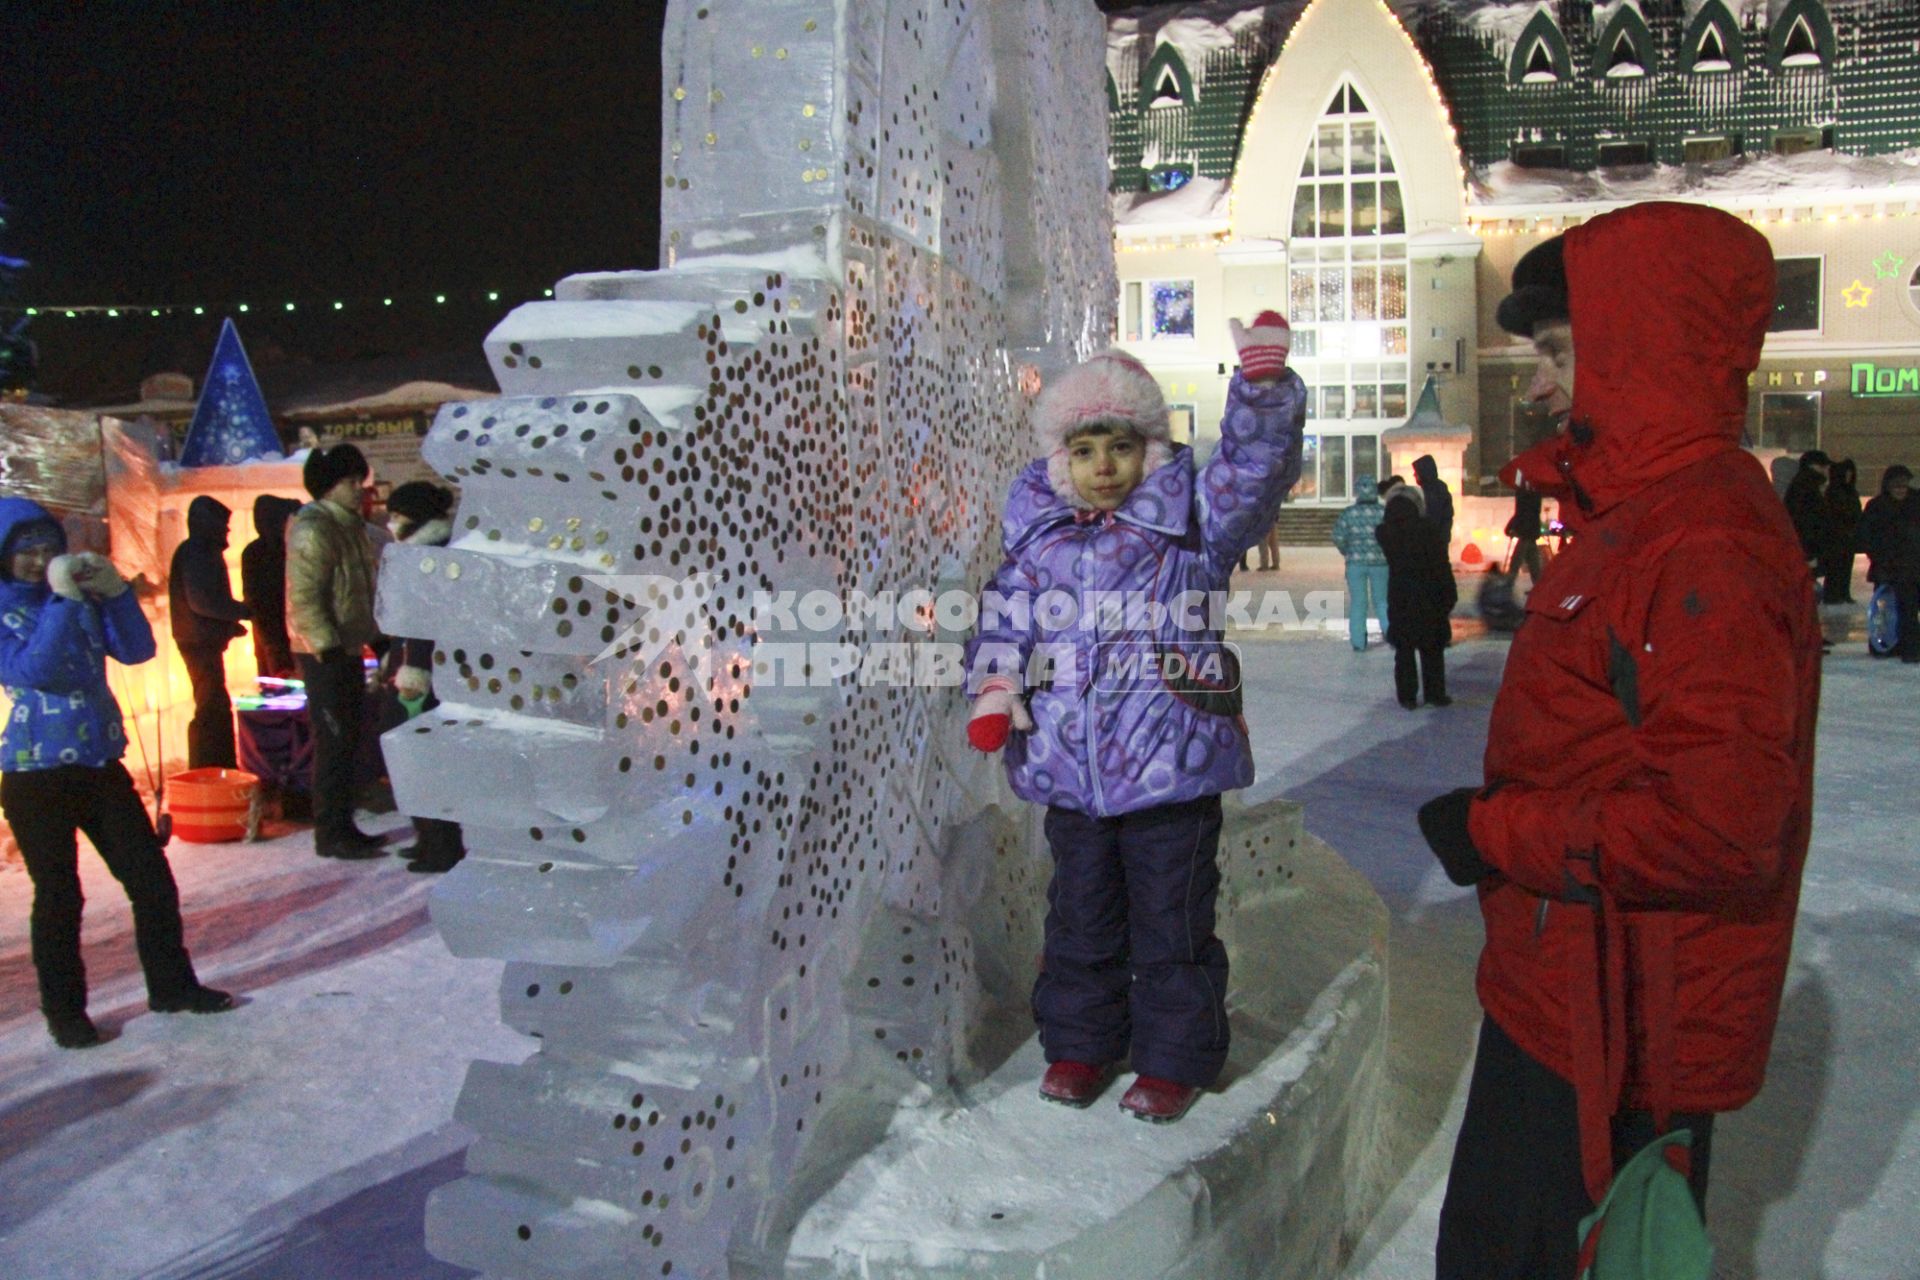 Празднование старого нового года на улицах Барнаула. Жители города закрепляют монетки на ледяных скульптурах на счастье.